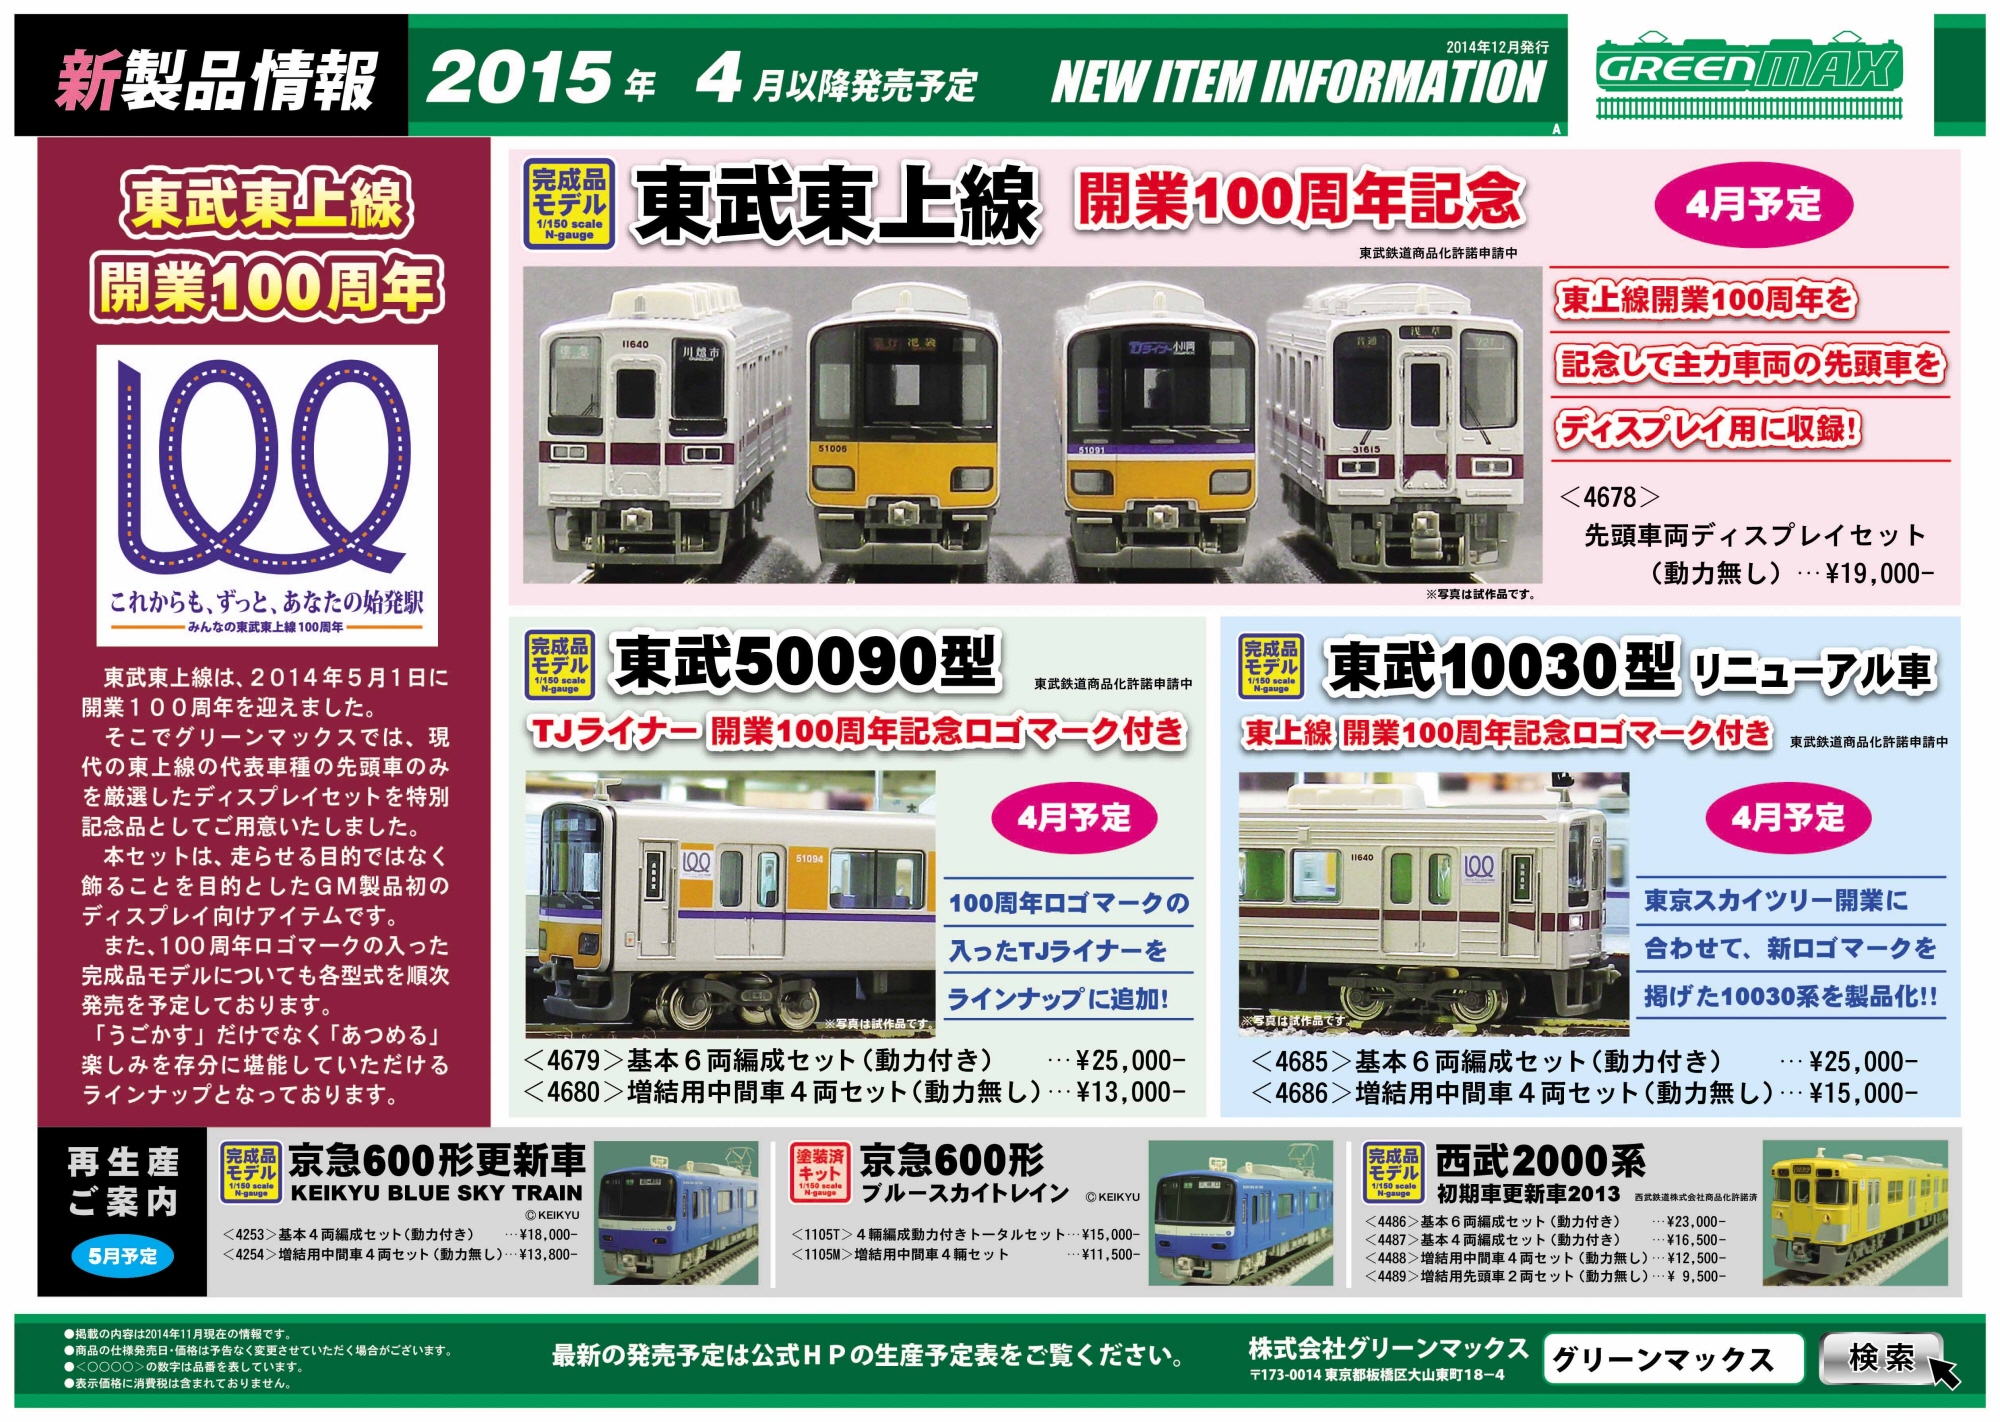 東武 10030型 リニューアル車 東上線 開業100周年記念ロゴマーク付き